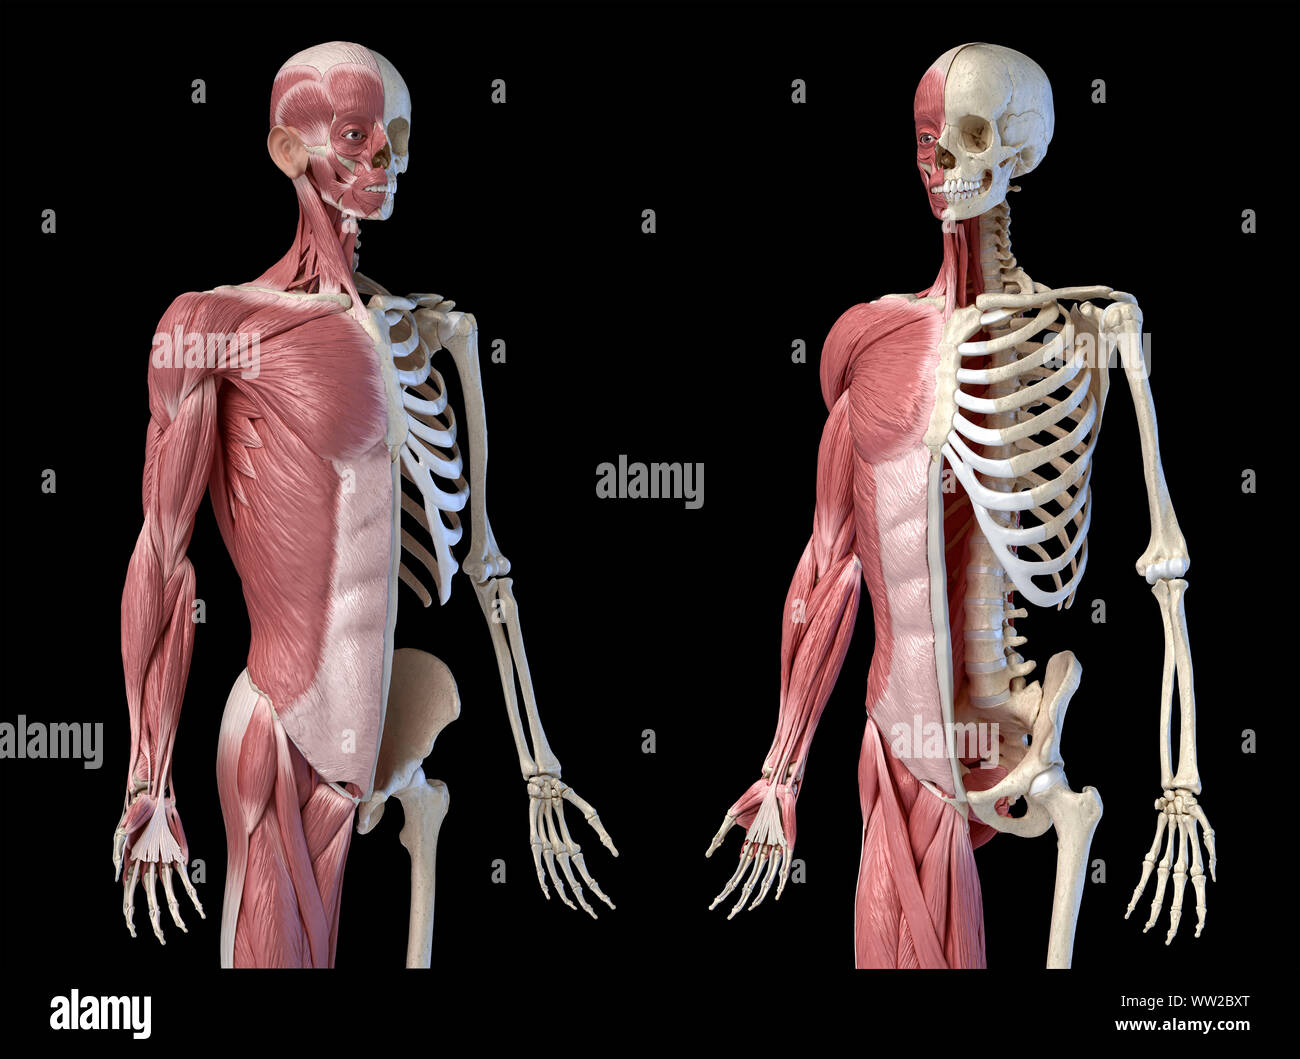 Die männliche Anatomie, 3/4 Abbildung Muskel- und Skeletterkrankungen Systeme, Perspektive vor zwei Ansichten auf schwarzem Hintergrund. 3D-Anatomie Illustration. Stockfoto